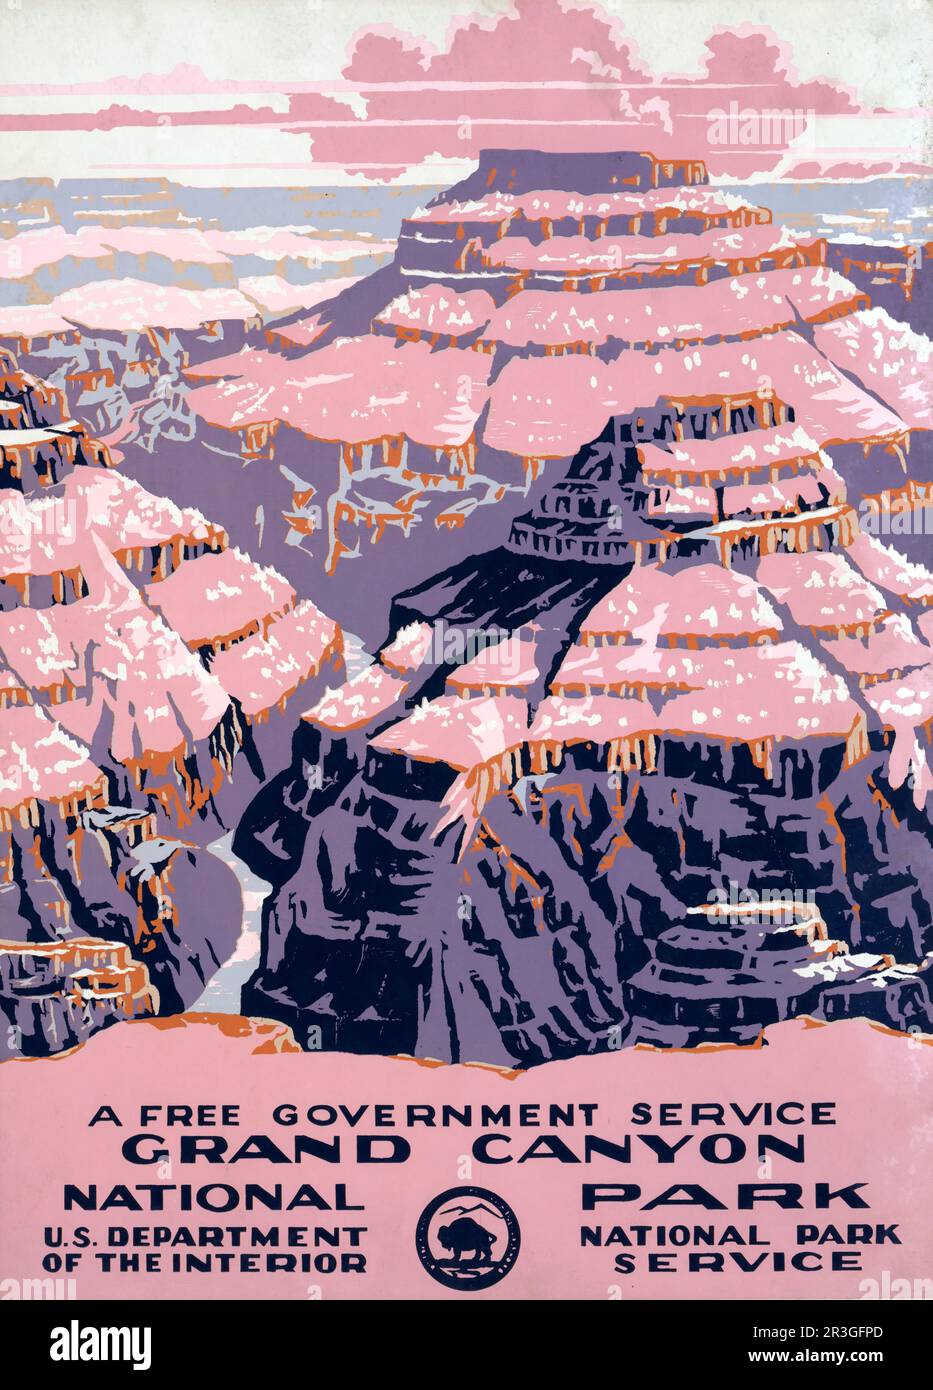 Das Oldtimer-Reiseposter zeigt den Blick auf den Grand Canyon National Park, einen kostenlosen Regierungsdienst, der ca. 1938 erbaut wurde. Stockfoto